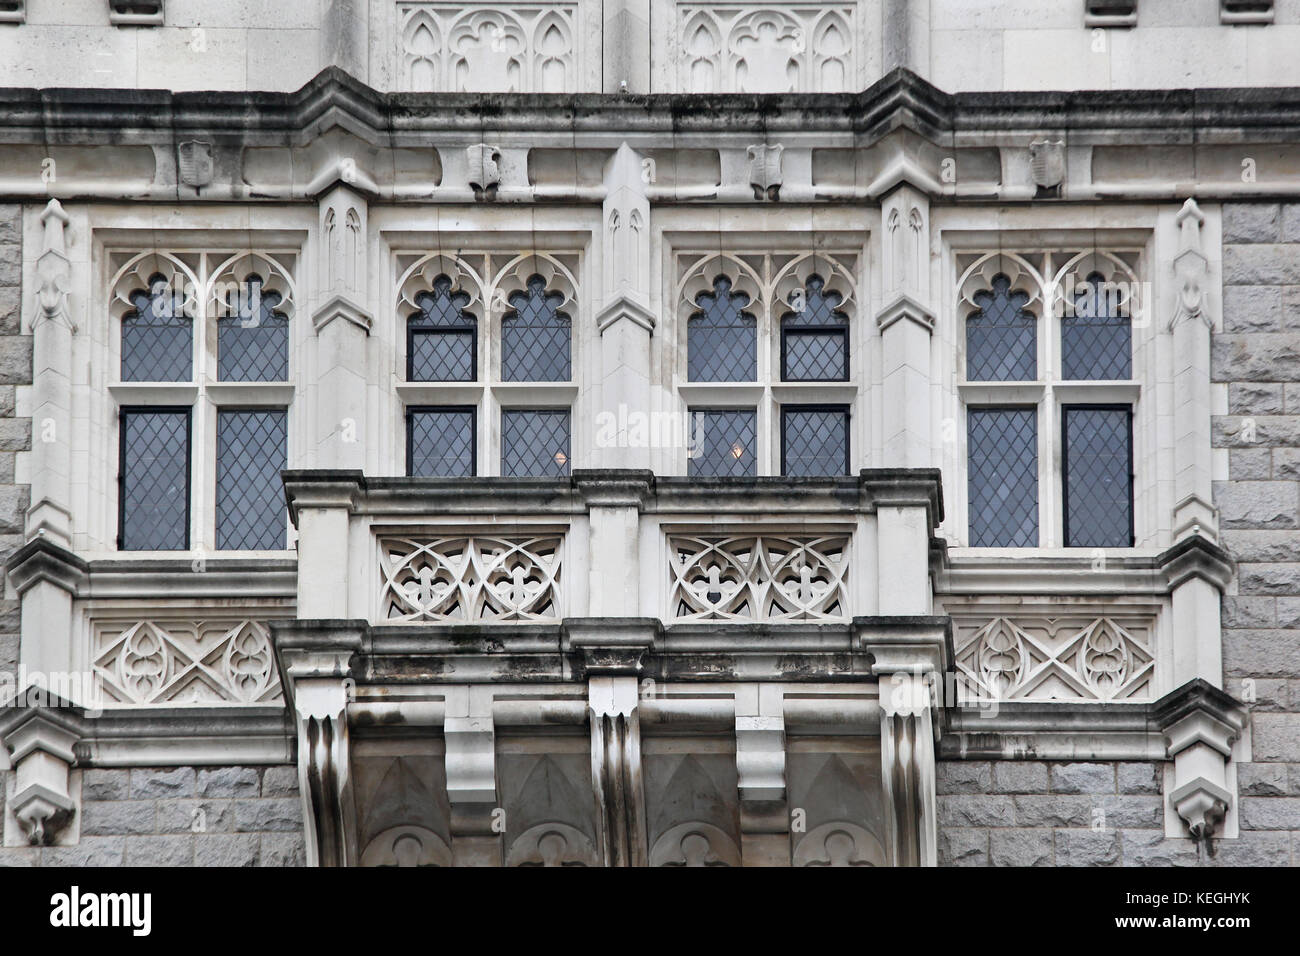 Vieille façade en pierre avec des fenêtres et des ornements architecturaux Banque D'Images